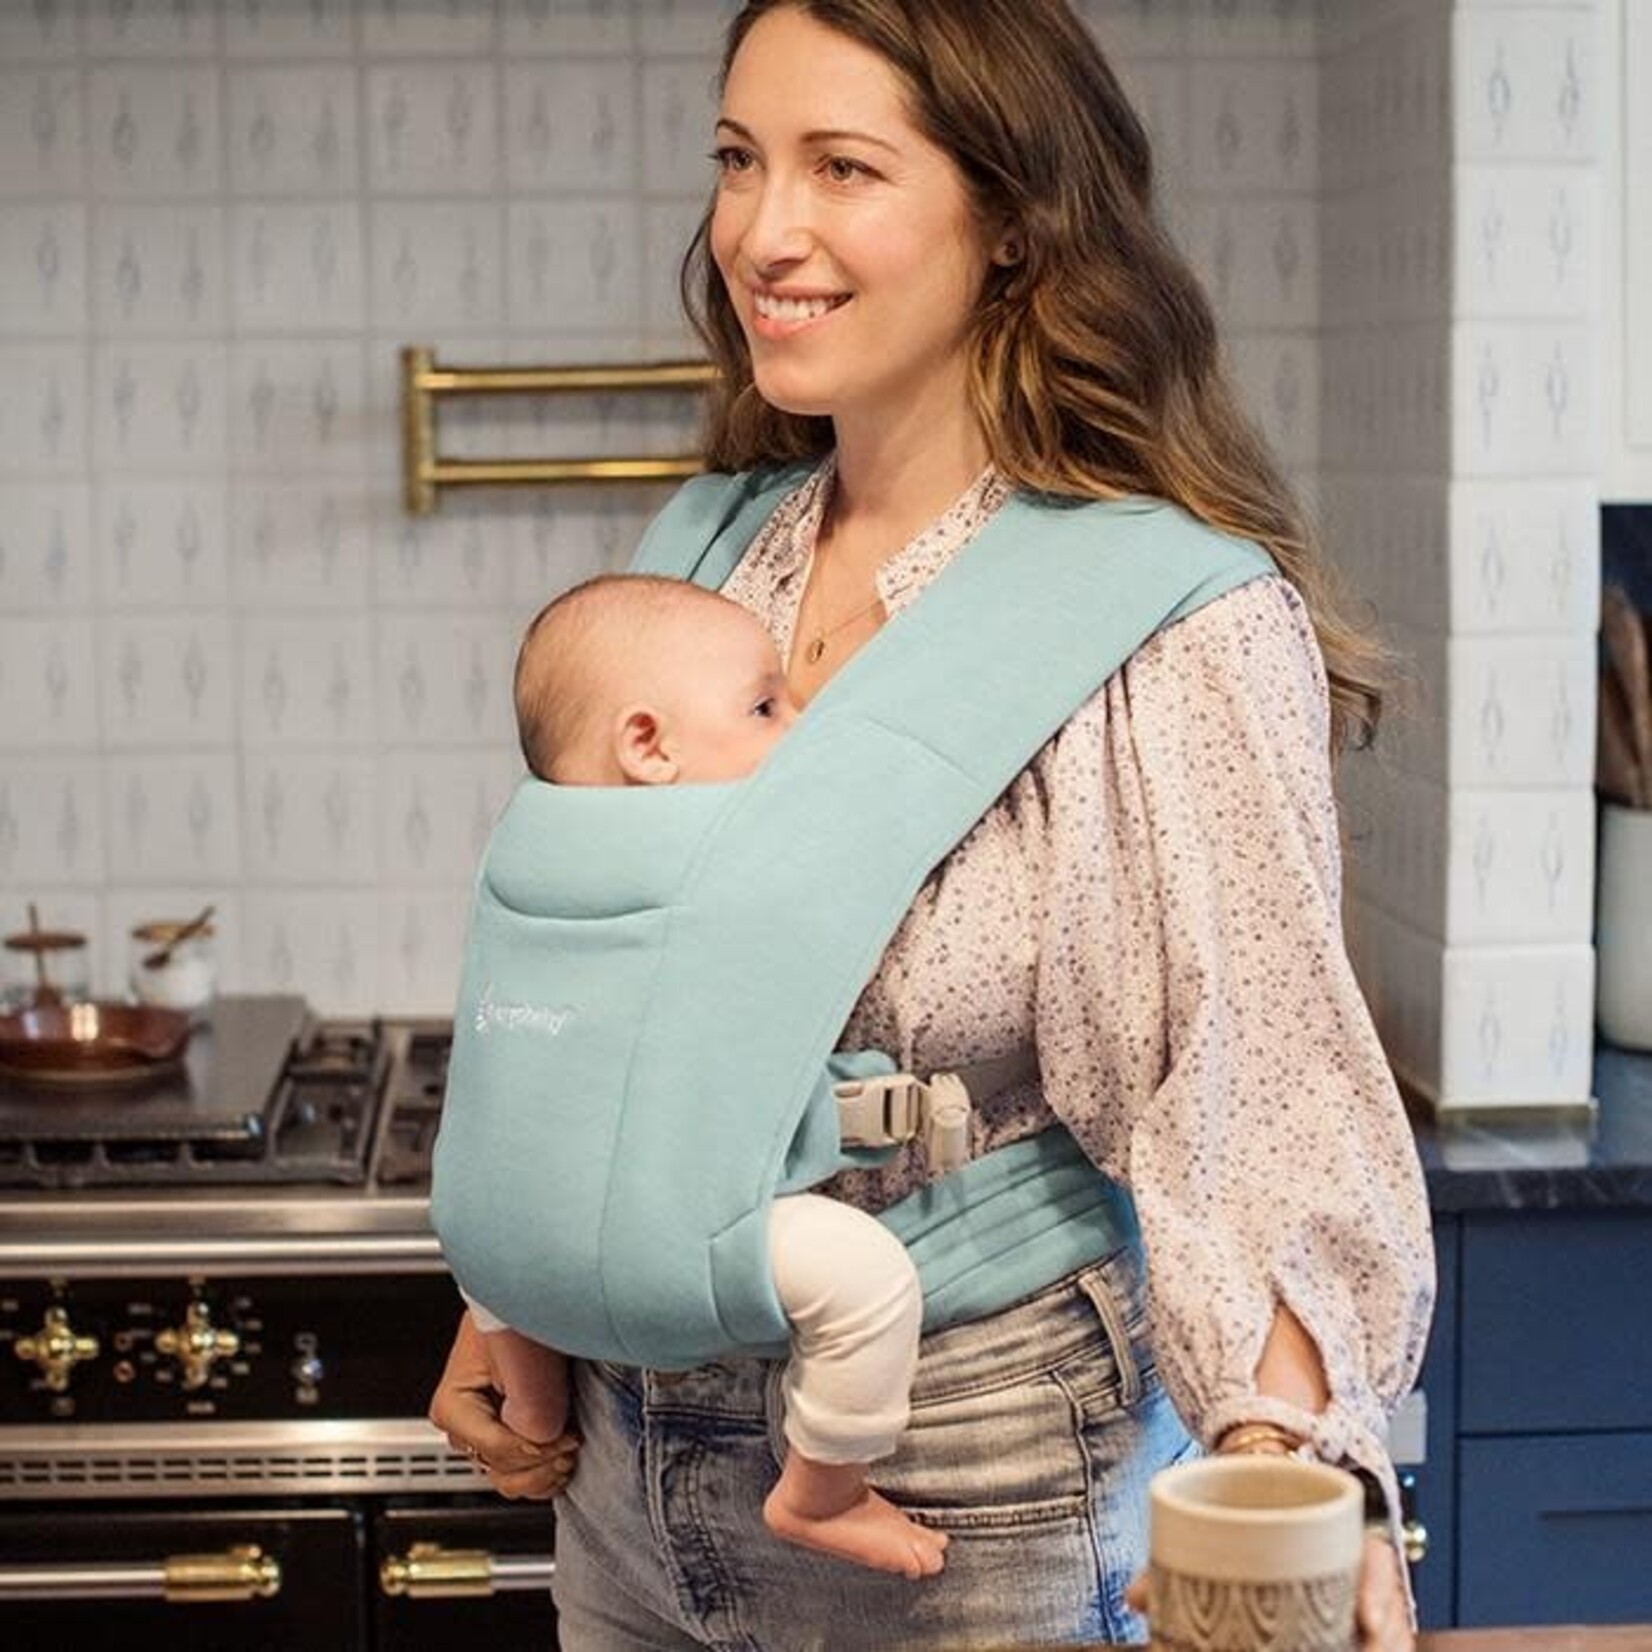 Porte bébé embrace nouveau-né Soft Knit Ergobaby - Petit Pois